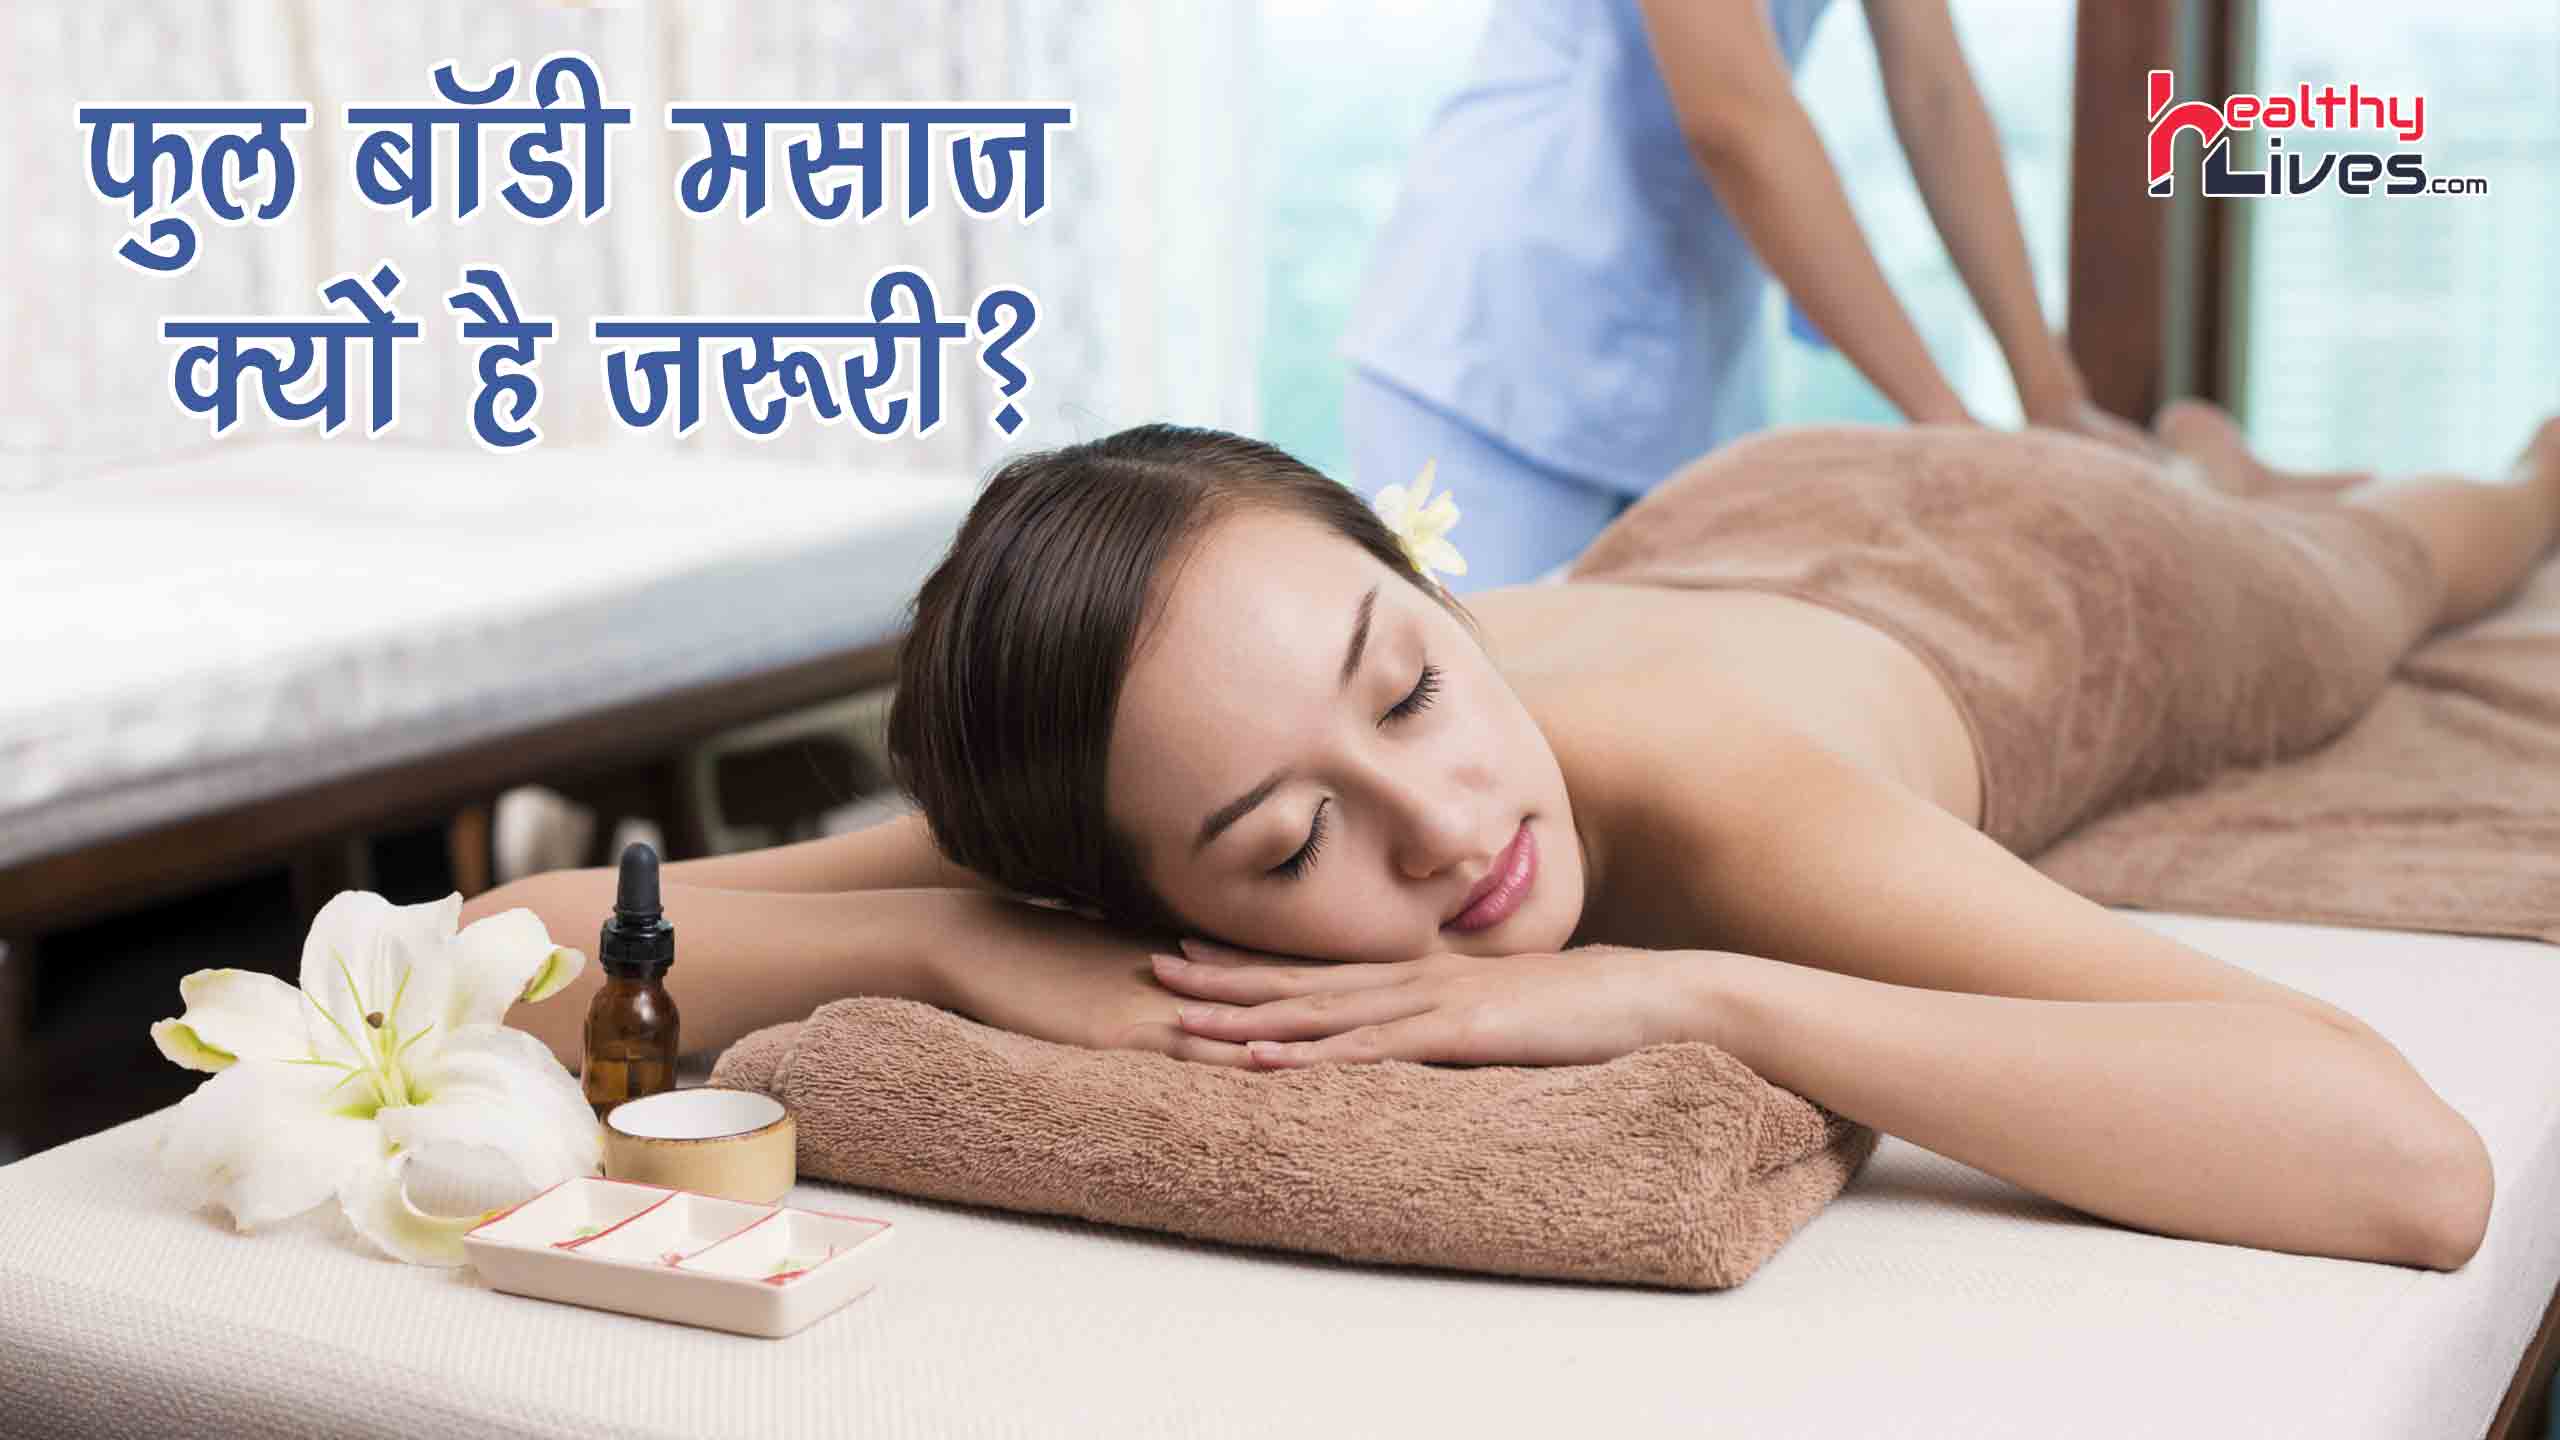 Full Body Massage in Hindi: दर्द और तनाव दूर कर देगा ये बॉडी मसाज